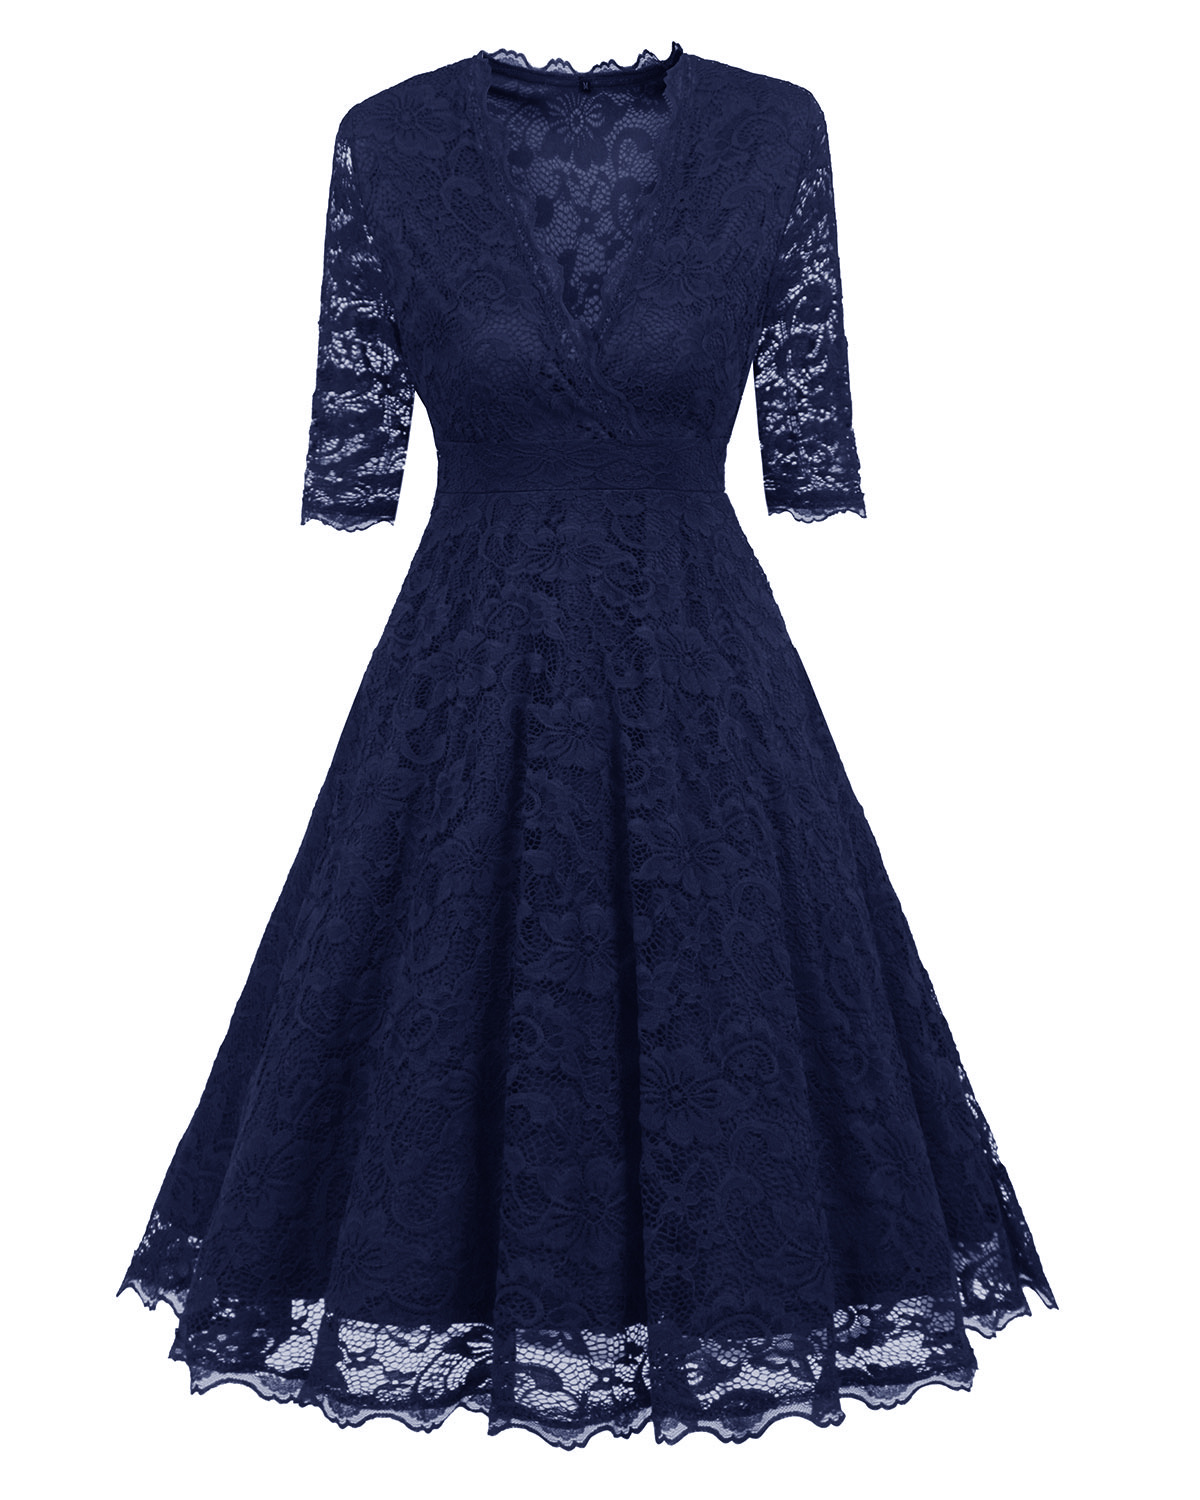 Women's Vintage Deep V Neck Slim Floral Lace Dress - Navy Blue